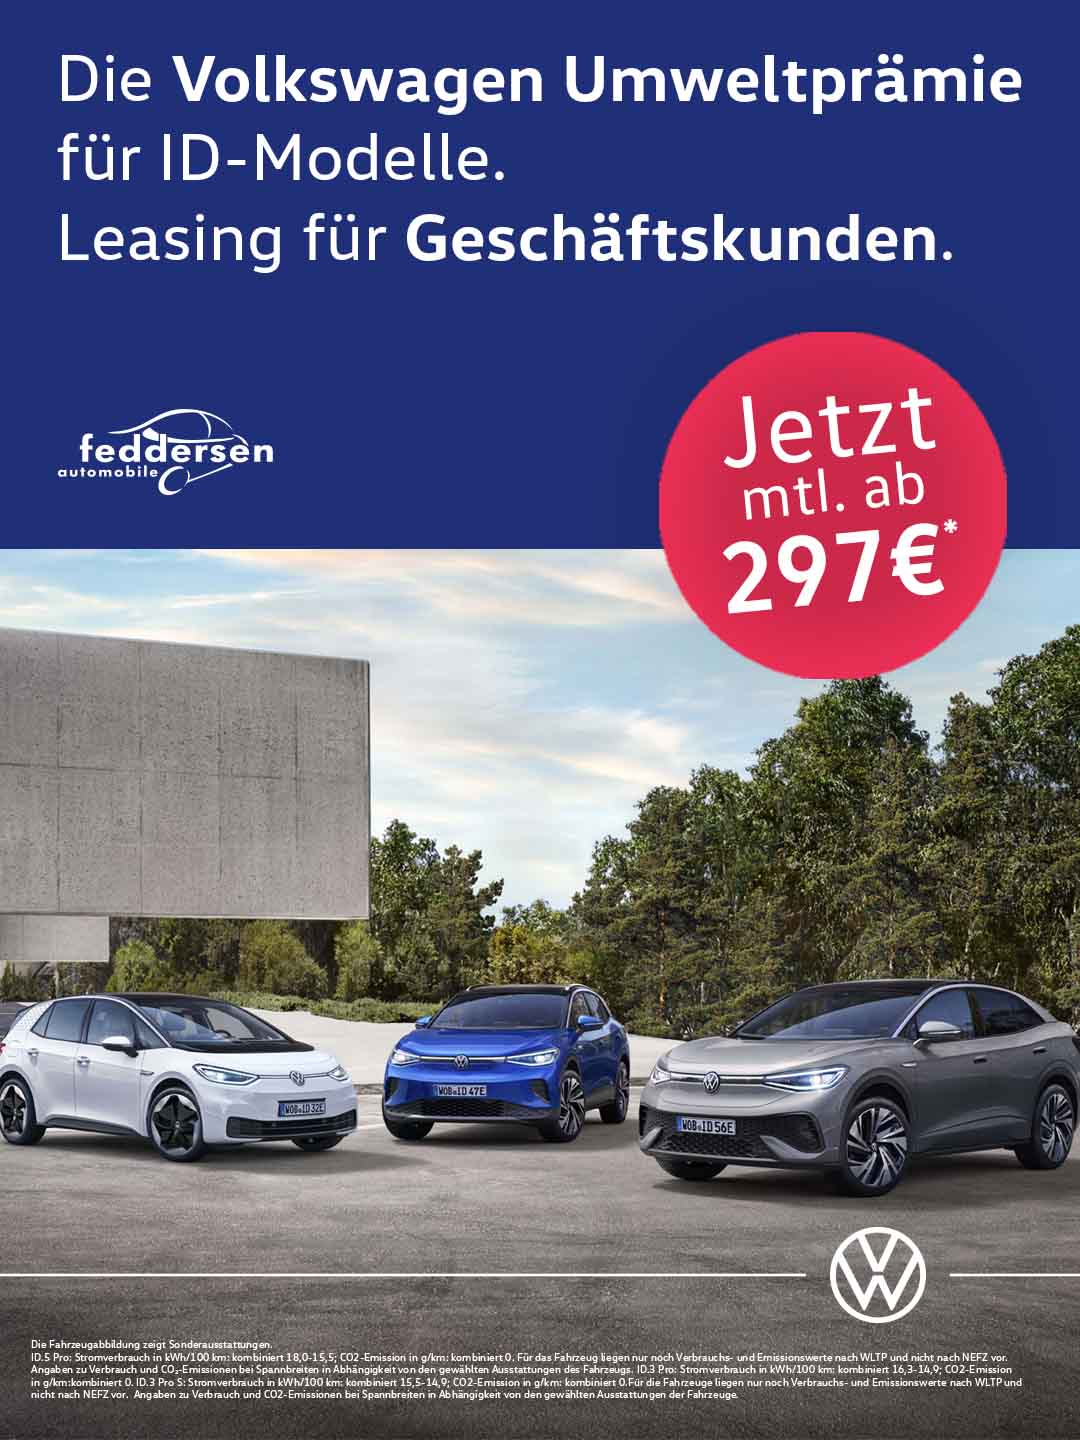 Die Volkswagen Umweltprämie für ID-Modelle. Leasing für Geschäftskunden.